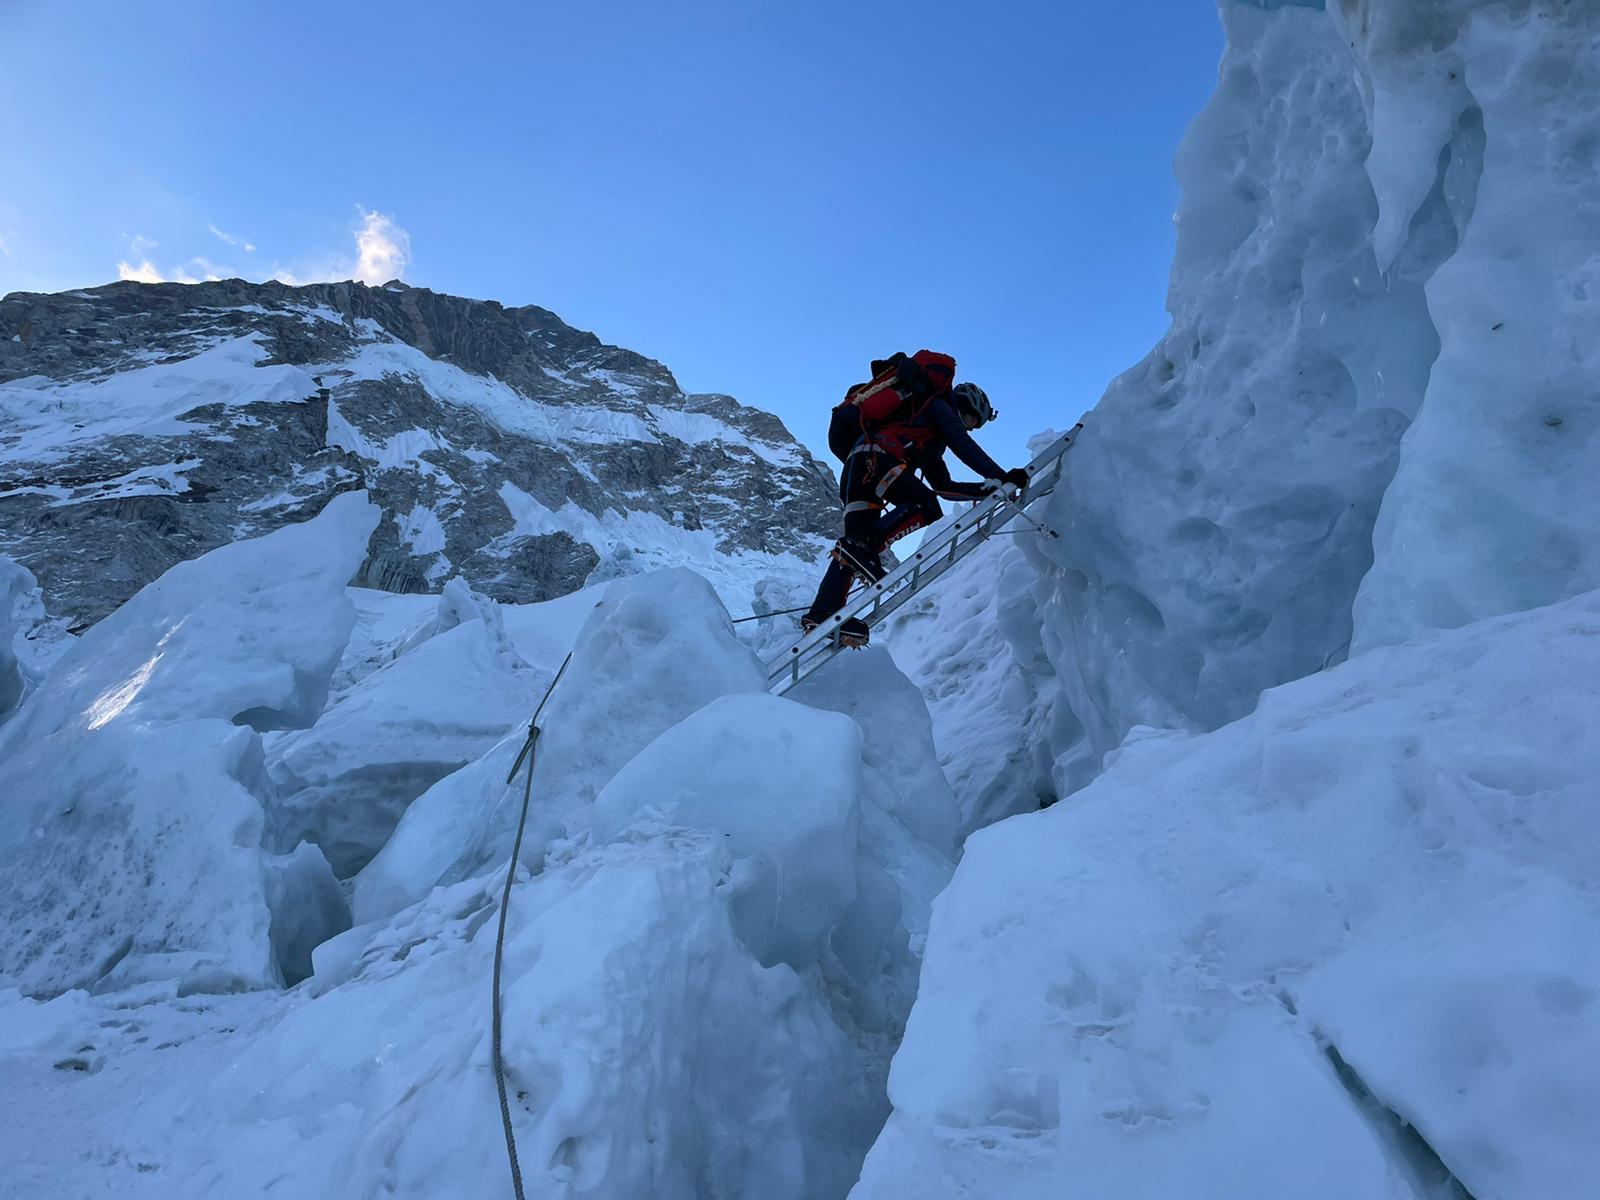 Expedition à l'Everest - Traversée de l'Icefall